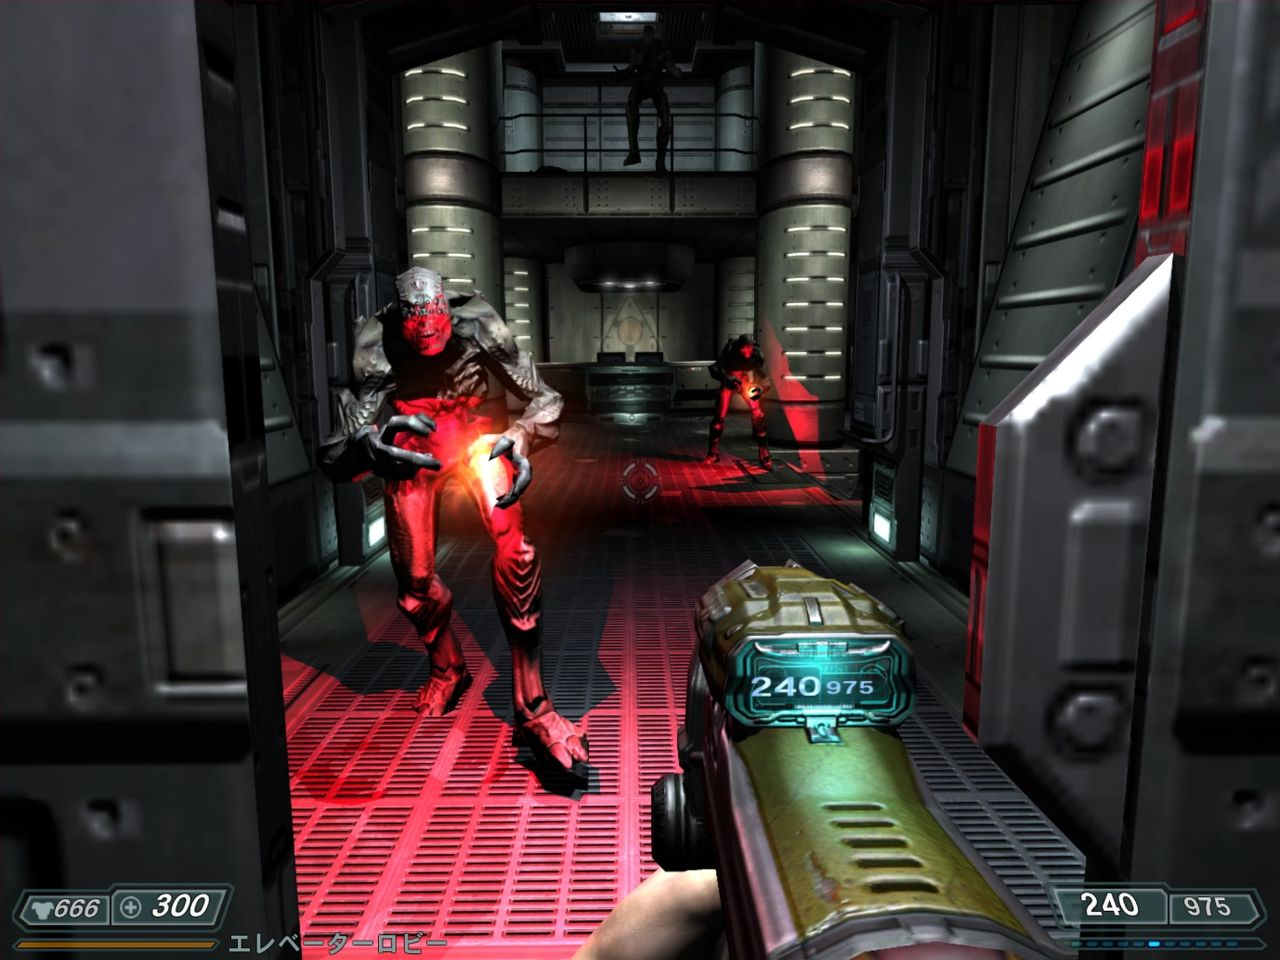 El modder convirtió el Doom 3 “elástico” en un juego de disparos dinámico, acercando el juego a las primeras partes, DOOM (2016) y DOOM Eternal.